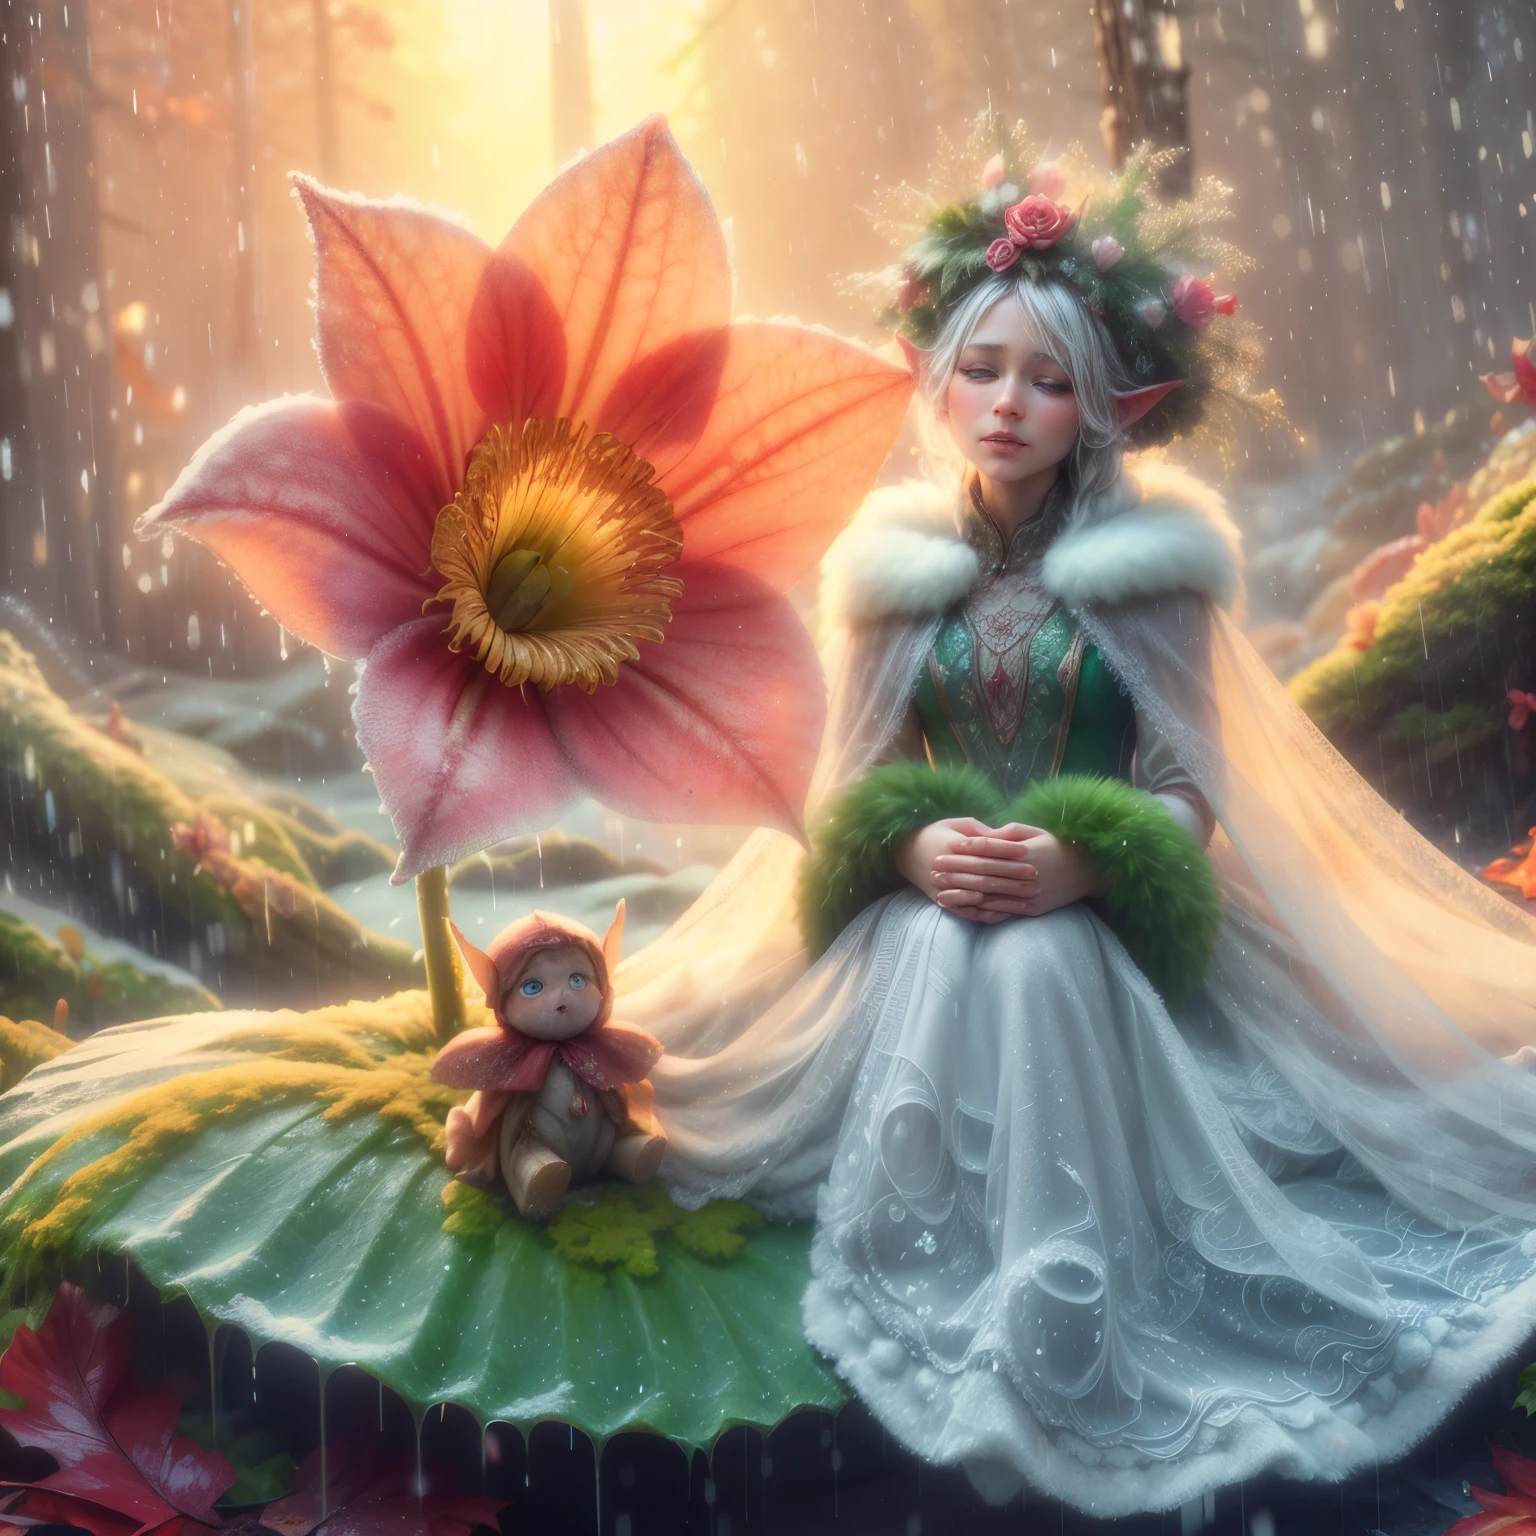 眼睛睜得大大的，虹膜圓形, 冬季女王美麗的瑞典女士穿著雪製成的高斯禮服, 一個小精靈輕輕地哭泣，眼淚像露珠一樣大，坐在雨中的一片葉子上，葉子上長滿了苔蘚，在一朵大花下，花上有一個洞，雨水可以從那裡進來, 多雨的森林背景, 小花, 晶瑩剔透的露珠和雨滴, 陽光下斑駁的紅橙色和黃色